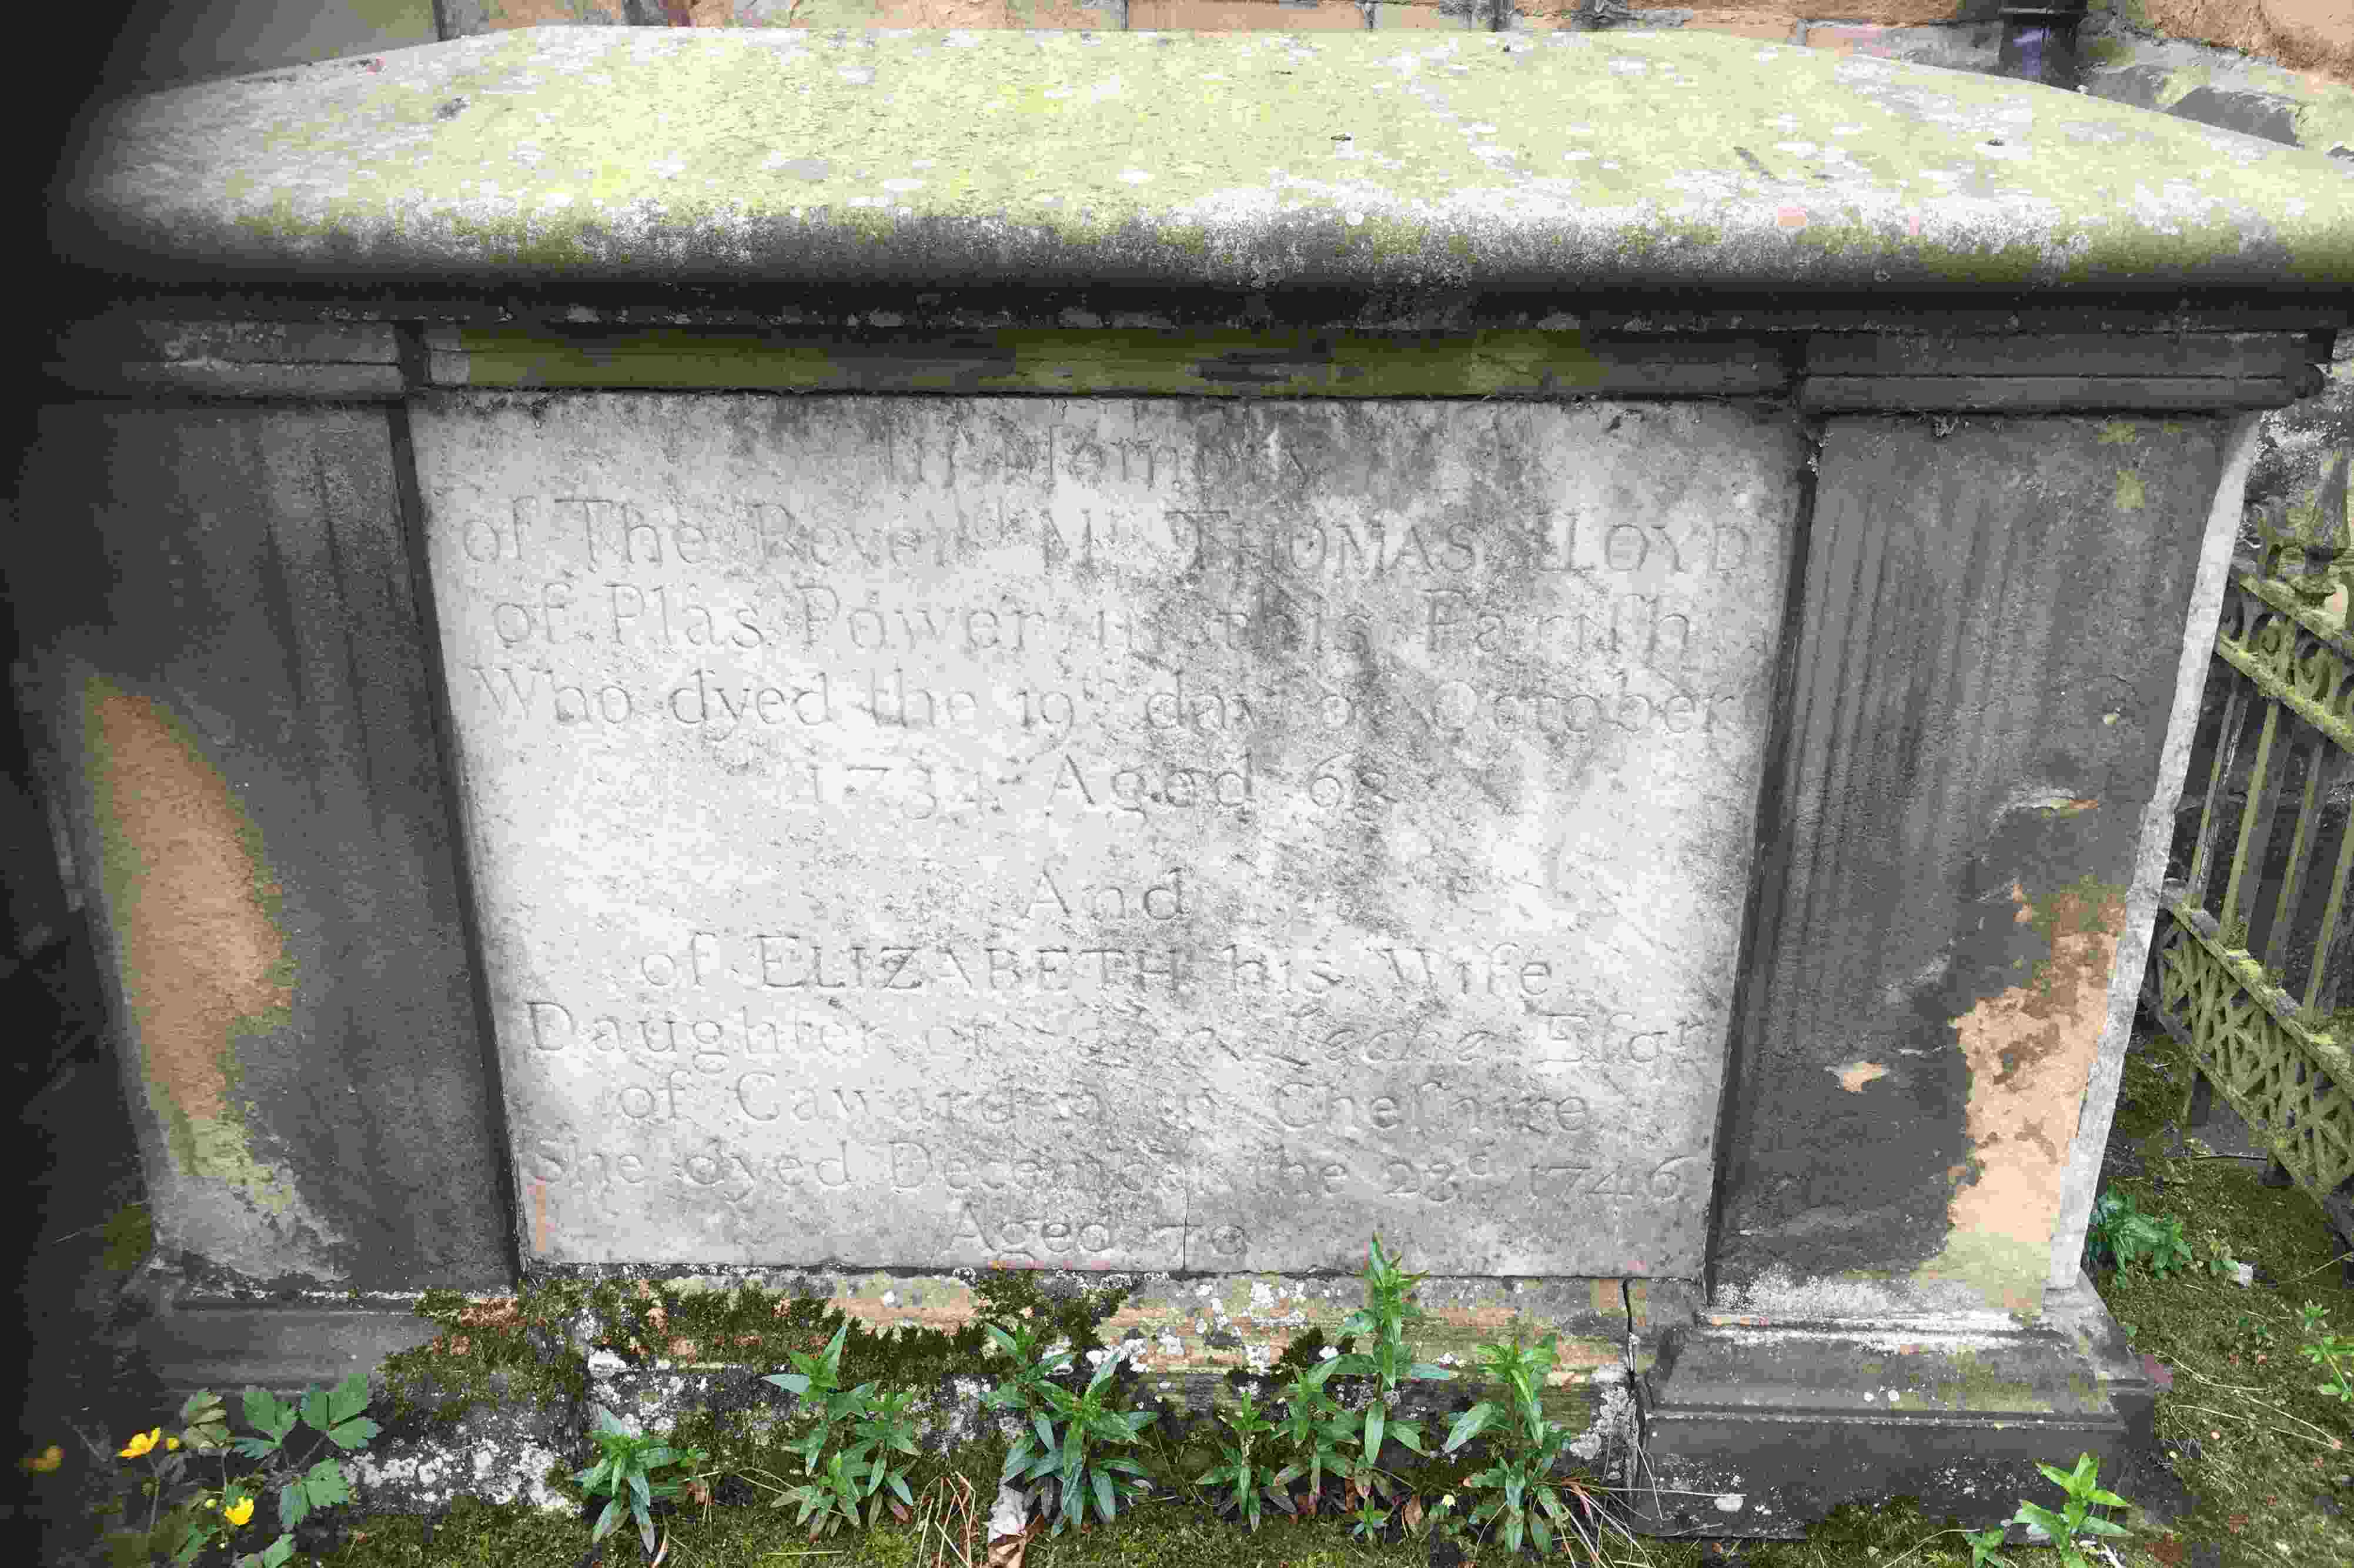 Thomas Lloyd and Elizabeth Leche headstone